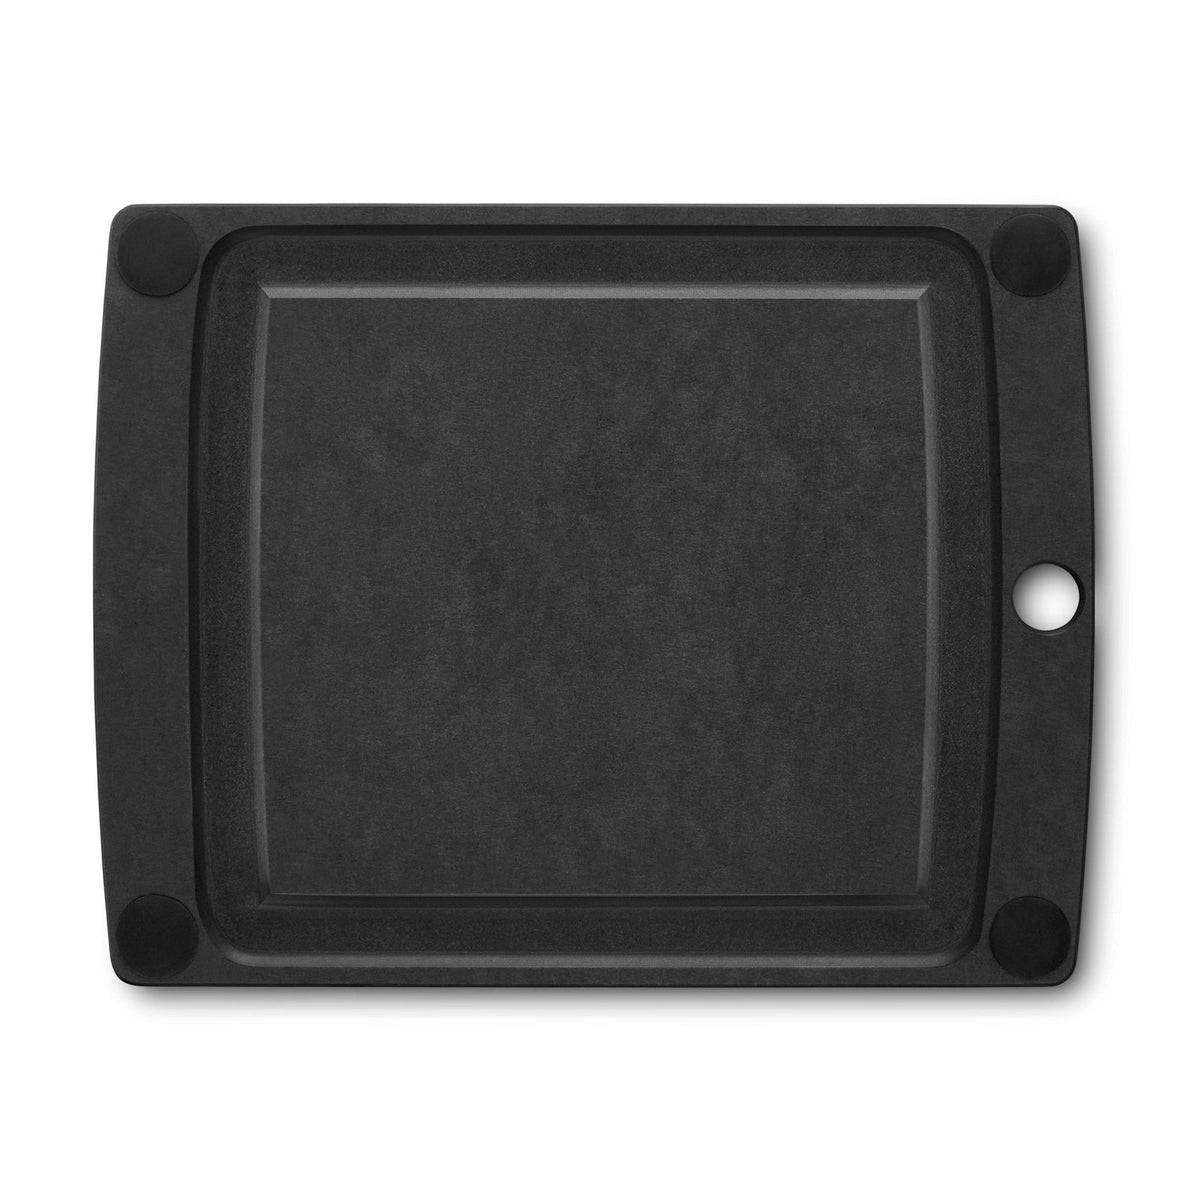 Victorinox All-in-One Skärbräda S, 29 x 23 cm, svart